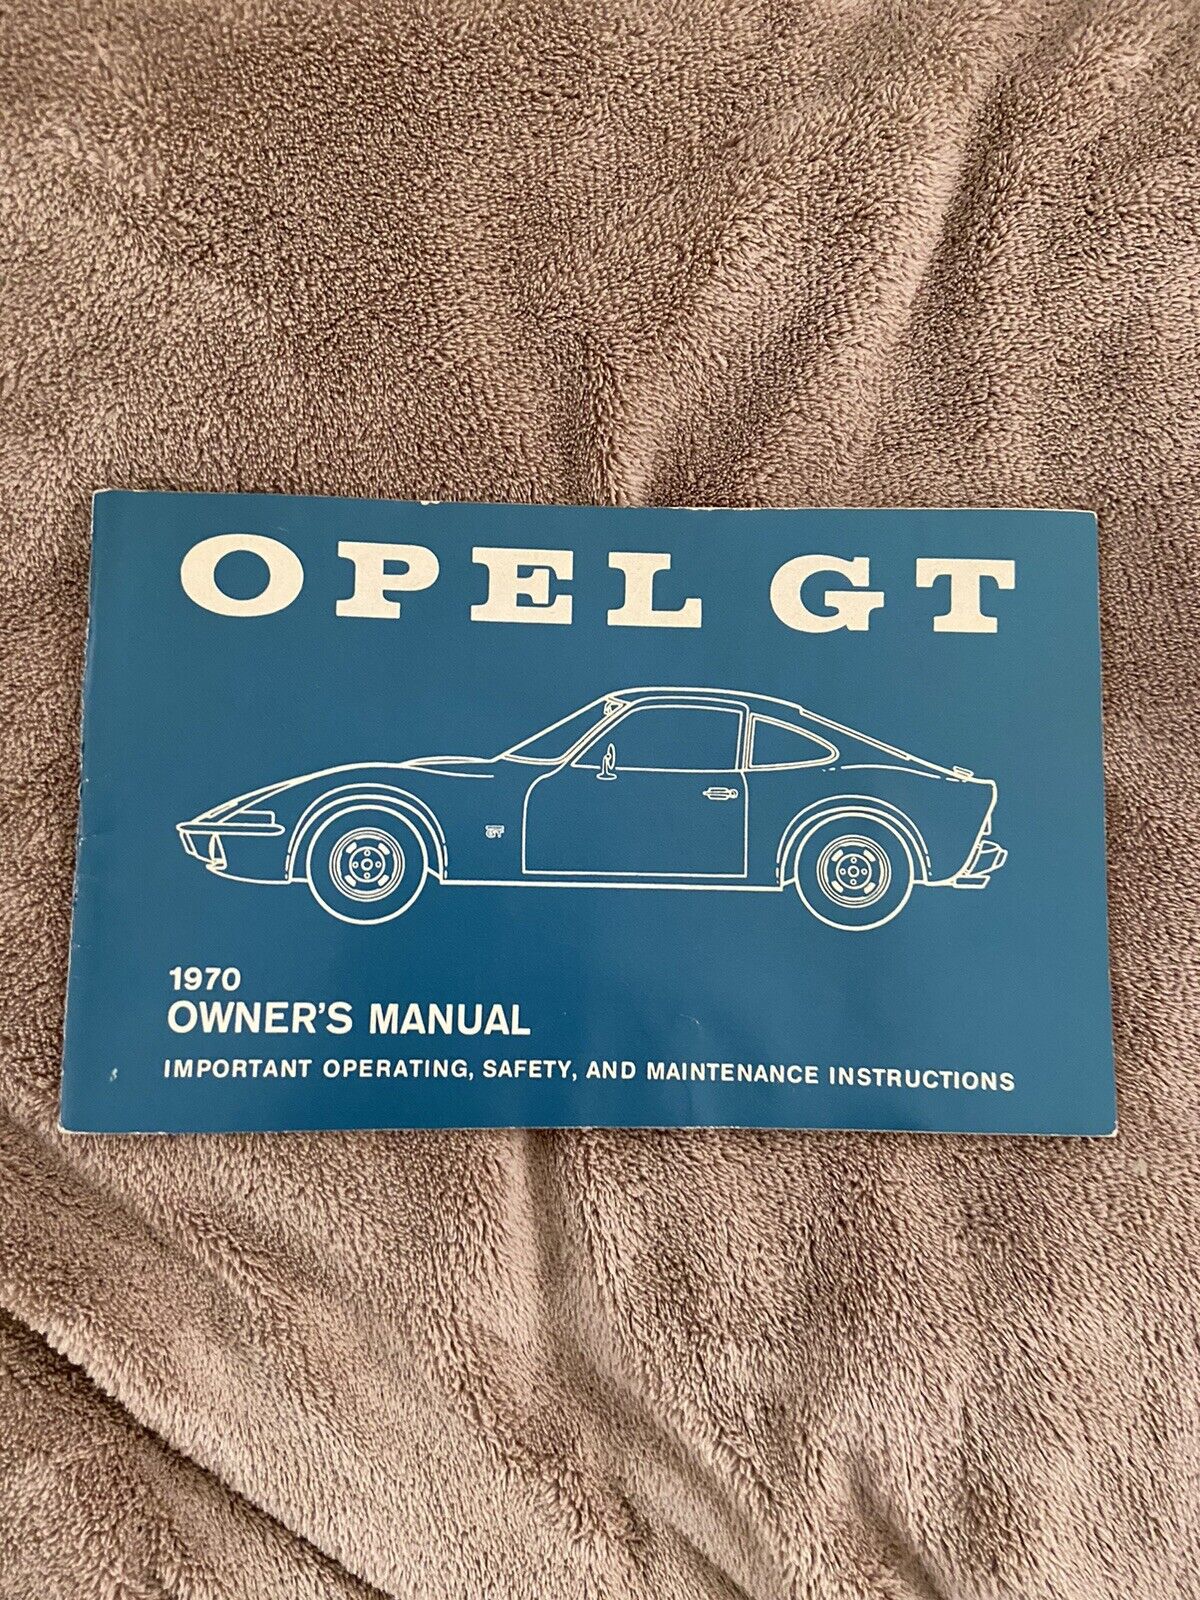 Original 1970 Buick Opel GT Owner's Manual